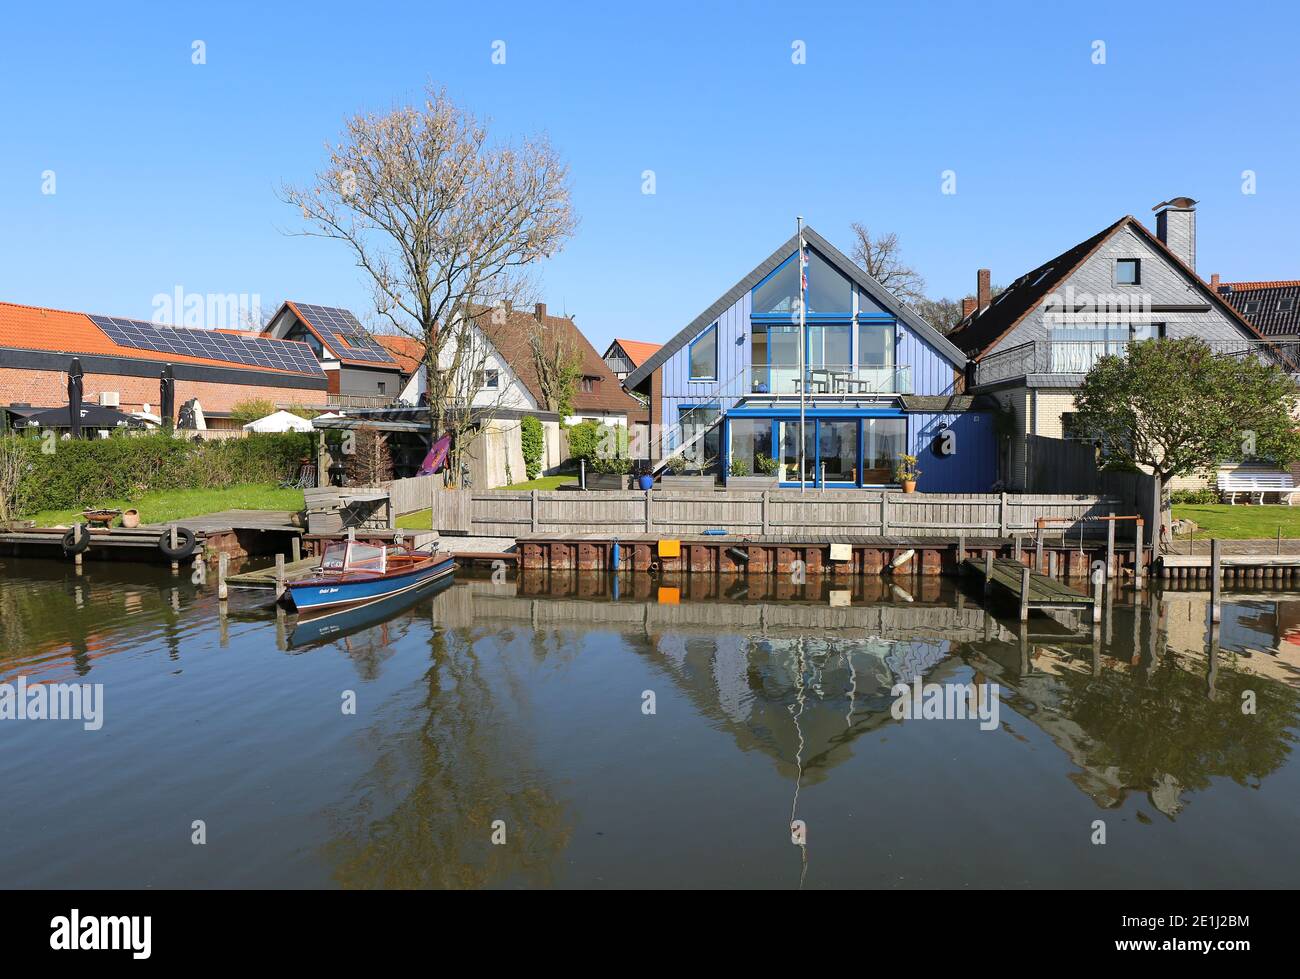 STEINHUDER MEER,ALEMANIA-ABRIL 19:hermosa casa con muelle y barco junto al lago.Abril 19,2019 en Steinhuder Meer,Alemania. Foto de stock